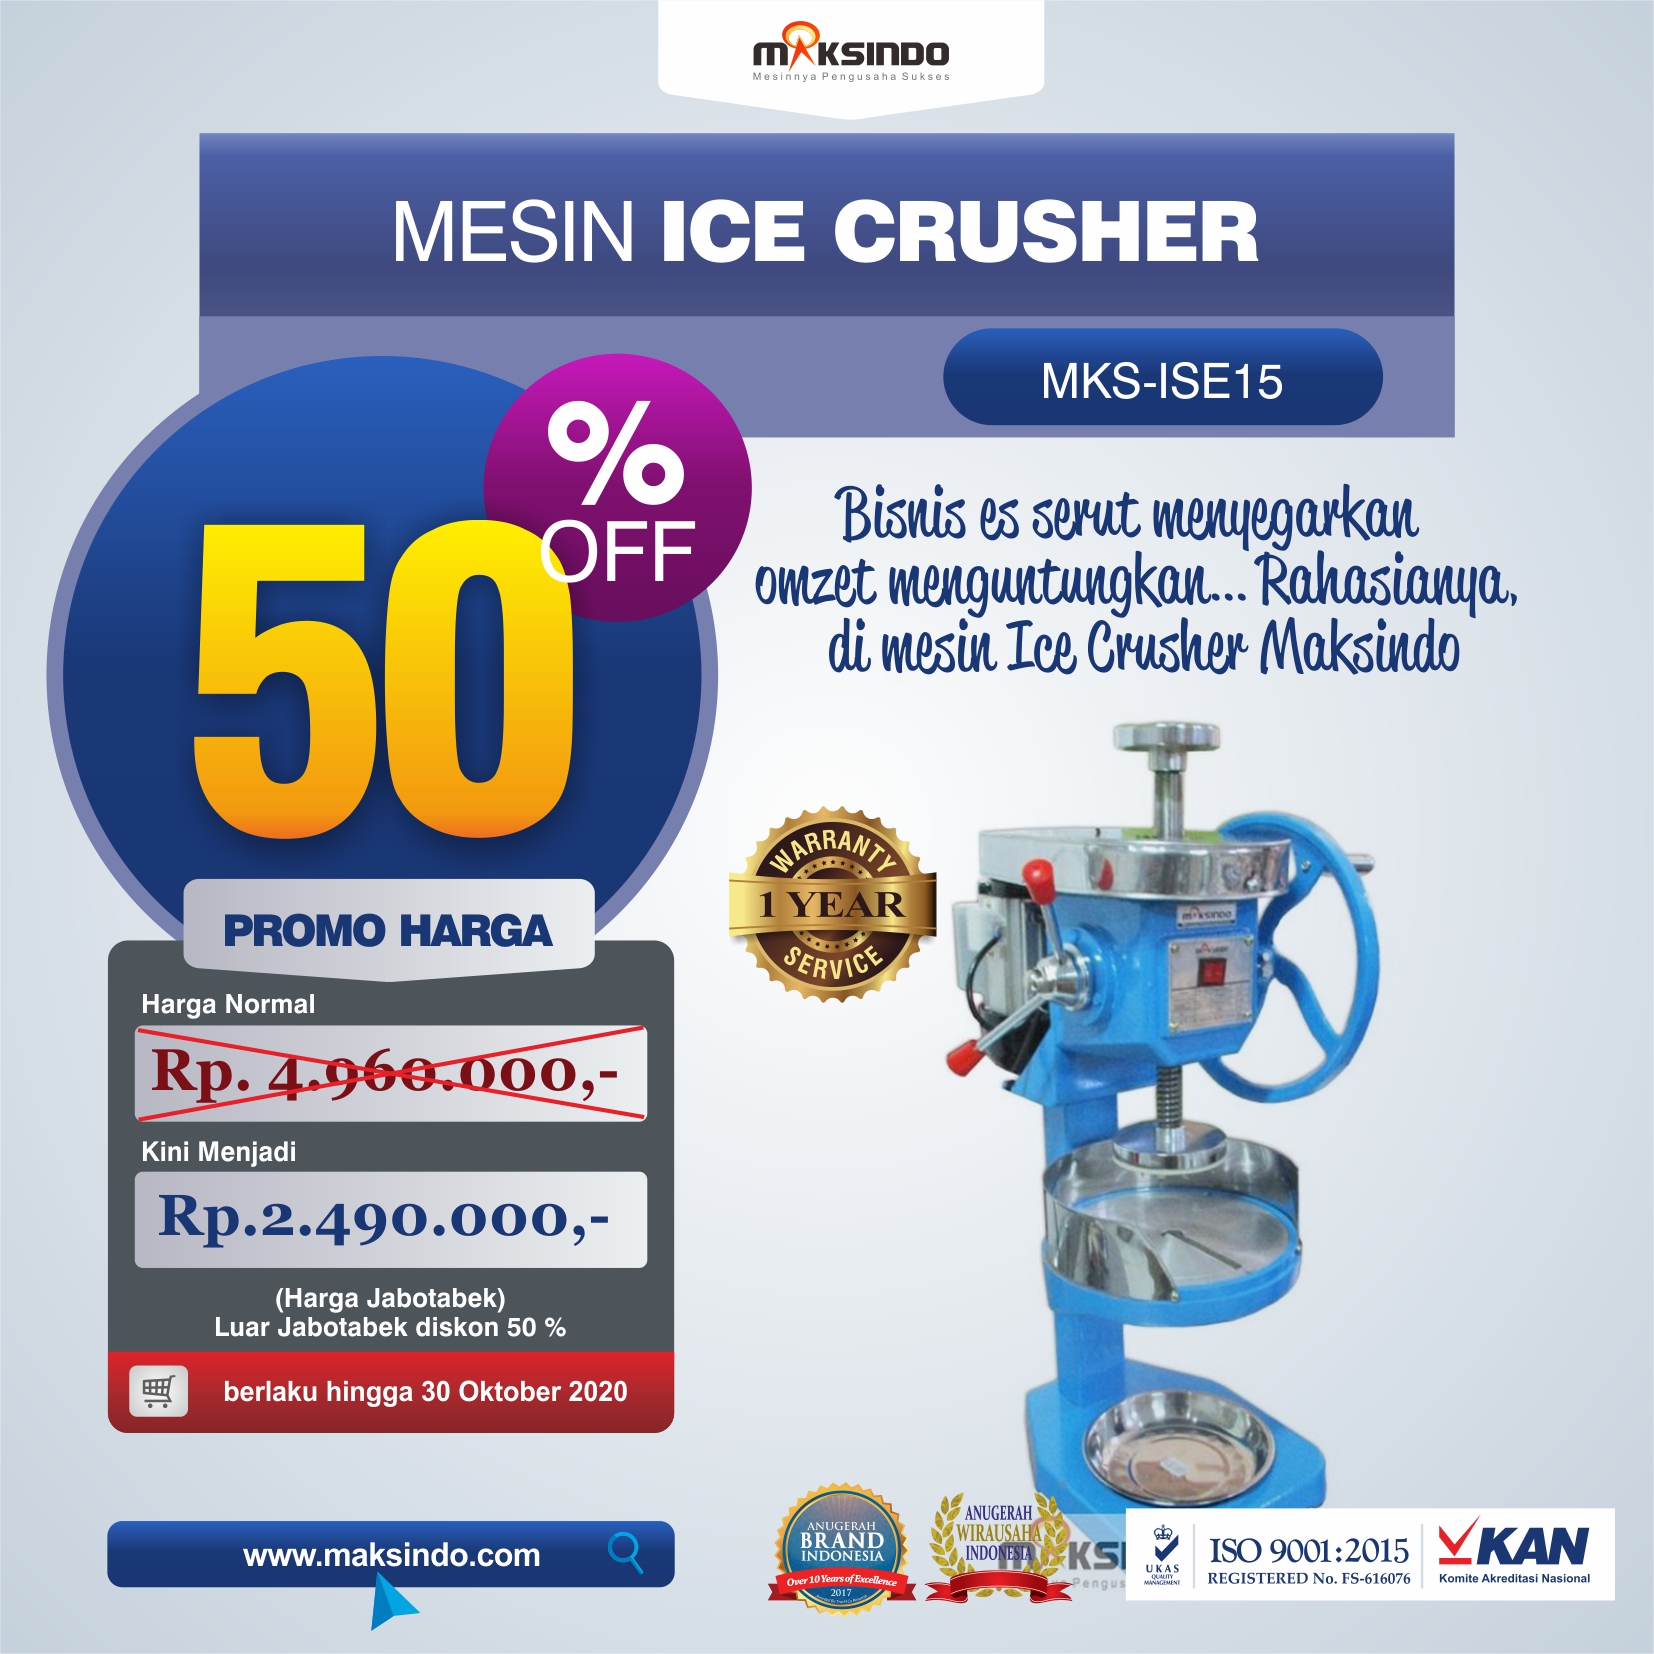 Jual Mesin Ice Crusher MKS-ISE15 Di Jakarta